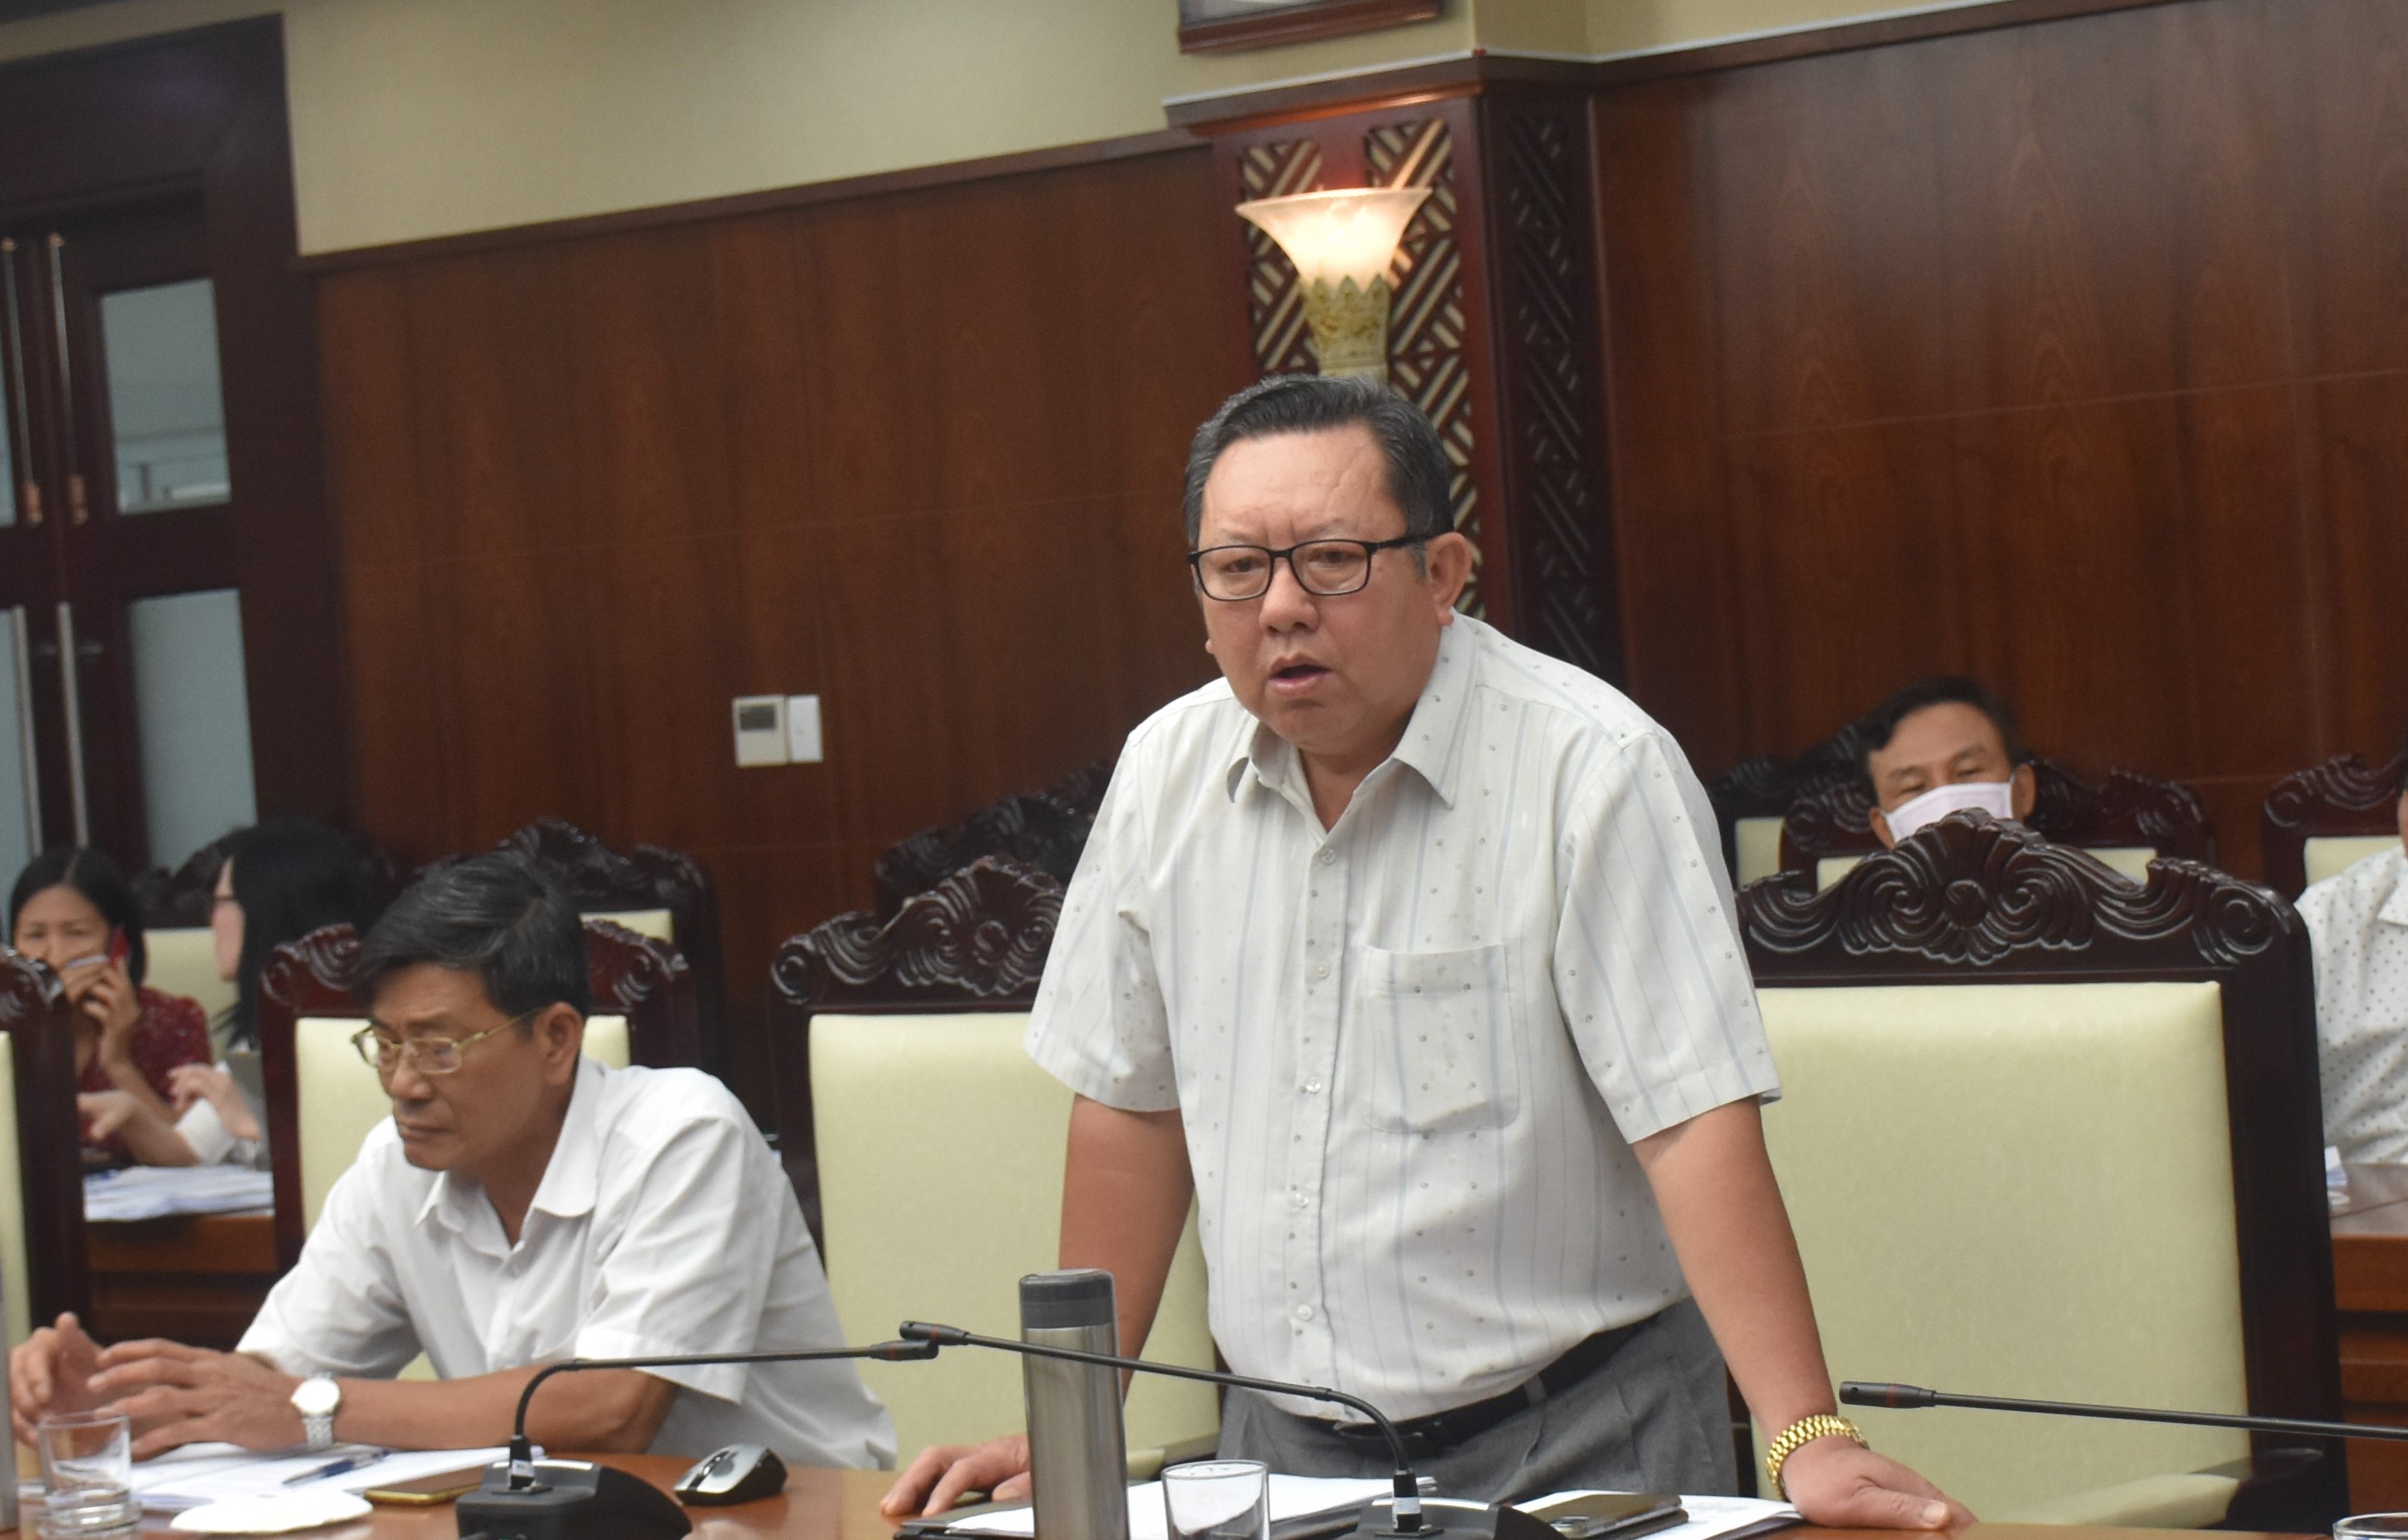 Bác sĩ Nguyễn Tấn Đạt, Chánh Văn phòng Sở Y tế nêu những vướng mắc trong việc triển khai các chính sách, chế độ hỗ trợ cho đội ngũ cán bộ, nhân viên TYT.